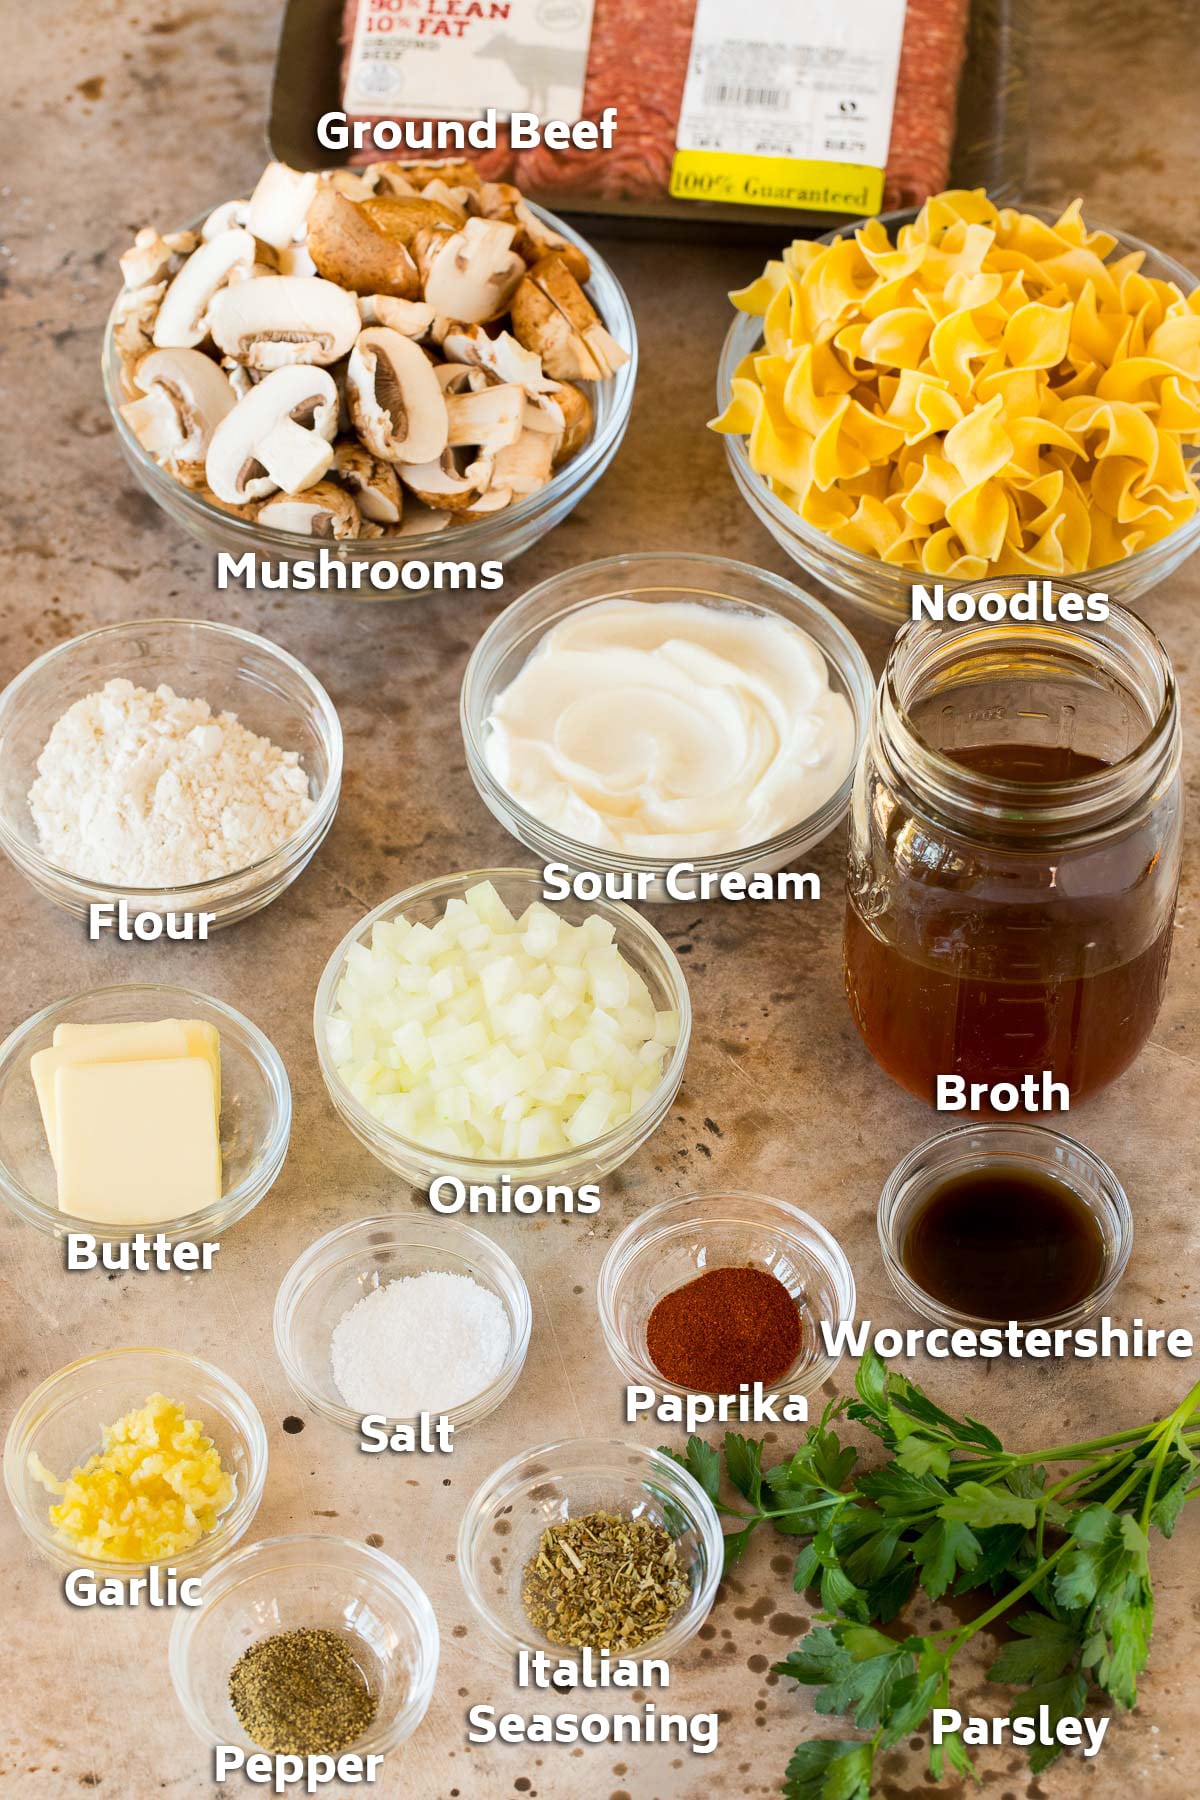 Bowls of ingredients including vegetables, broth, herbs and seasonings.